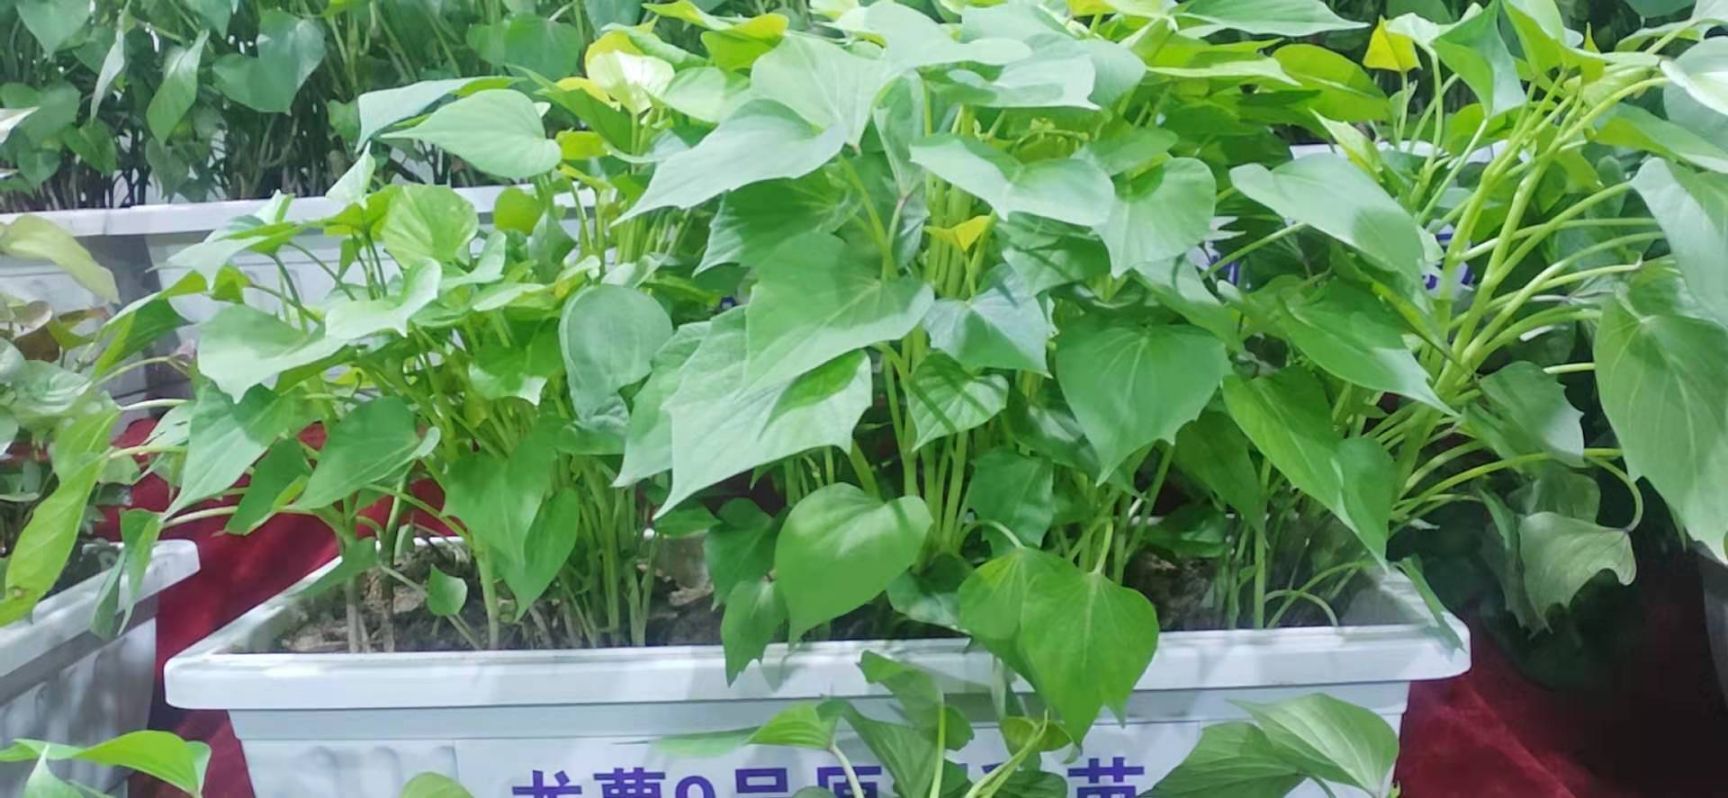 禹州市烟薯25号红薯苗 大量供应红薯苗，品种有商薯19 西瓜红  烟薯25  龙九